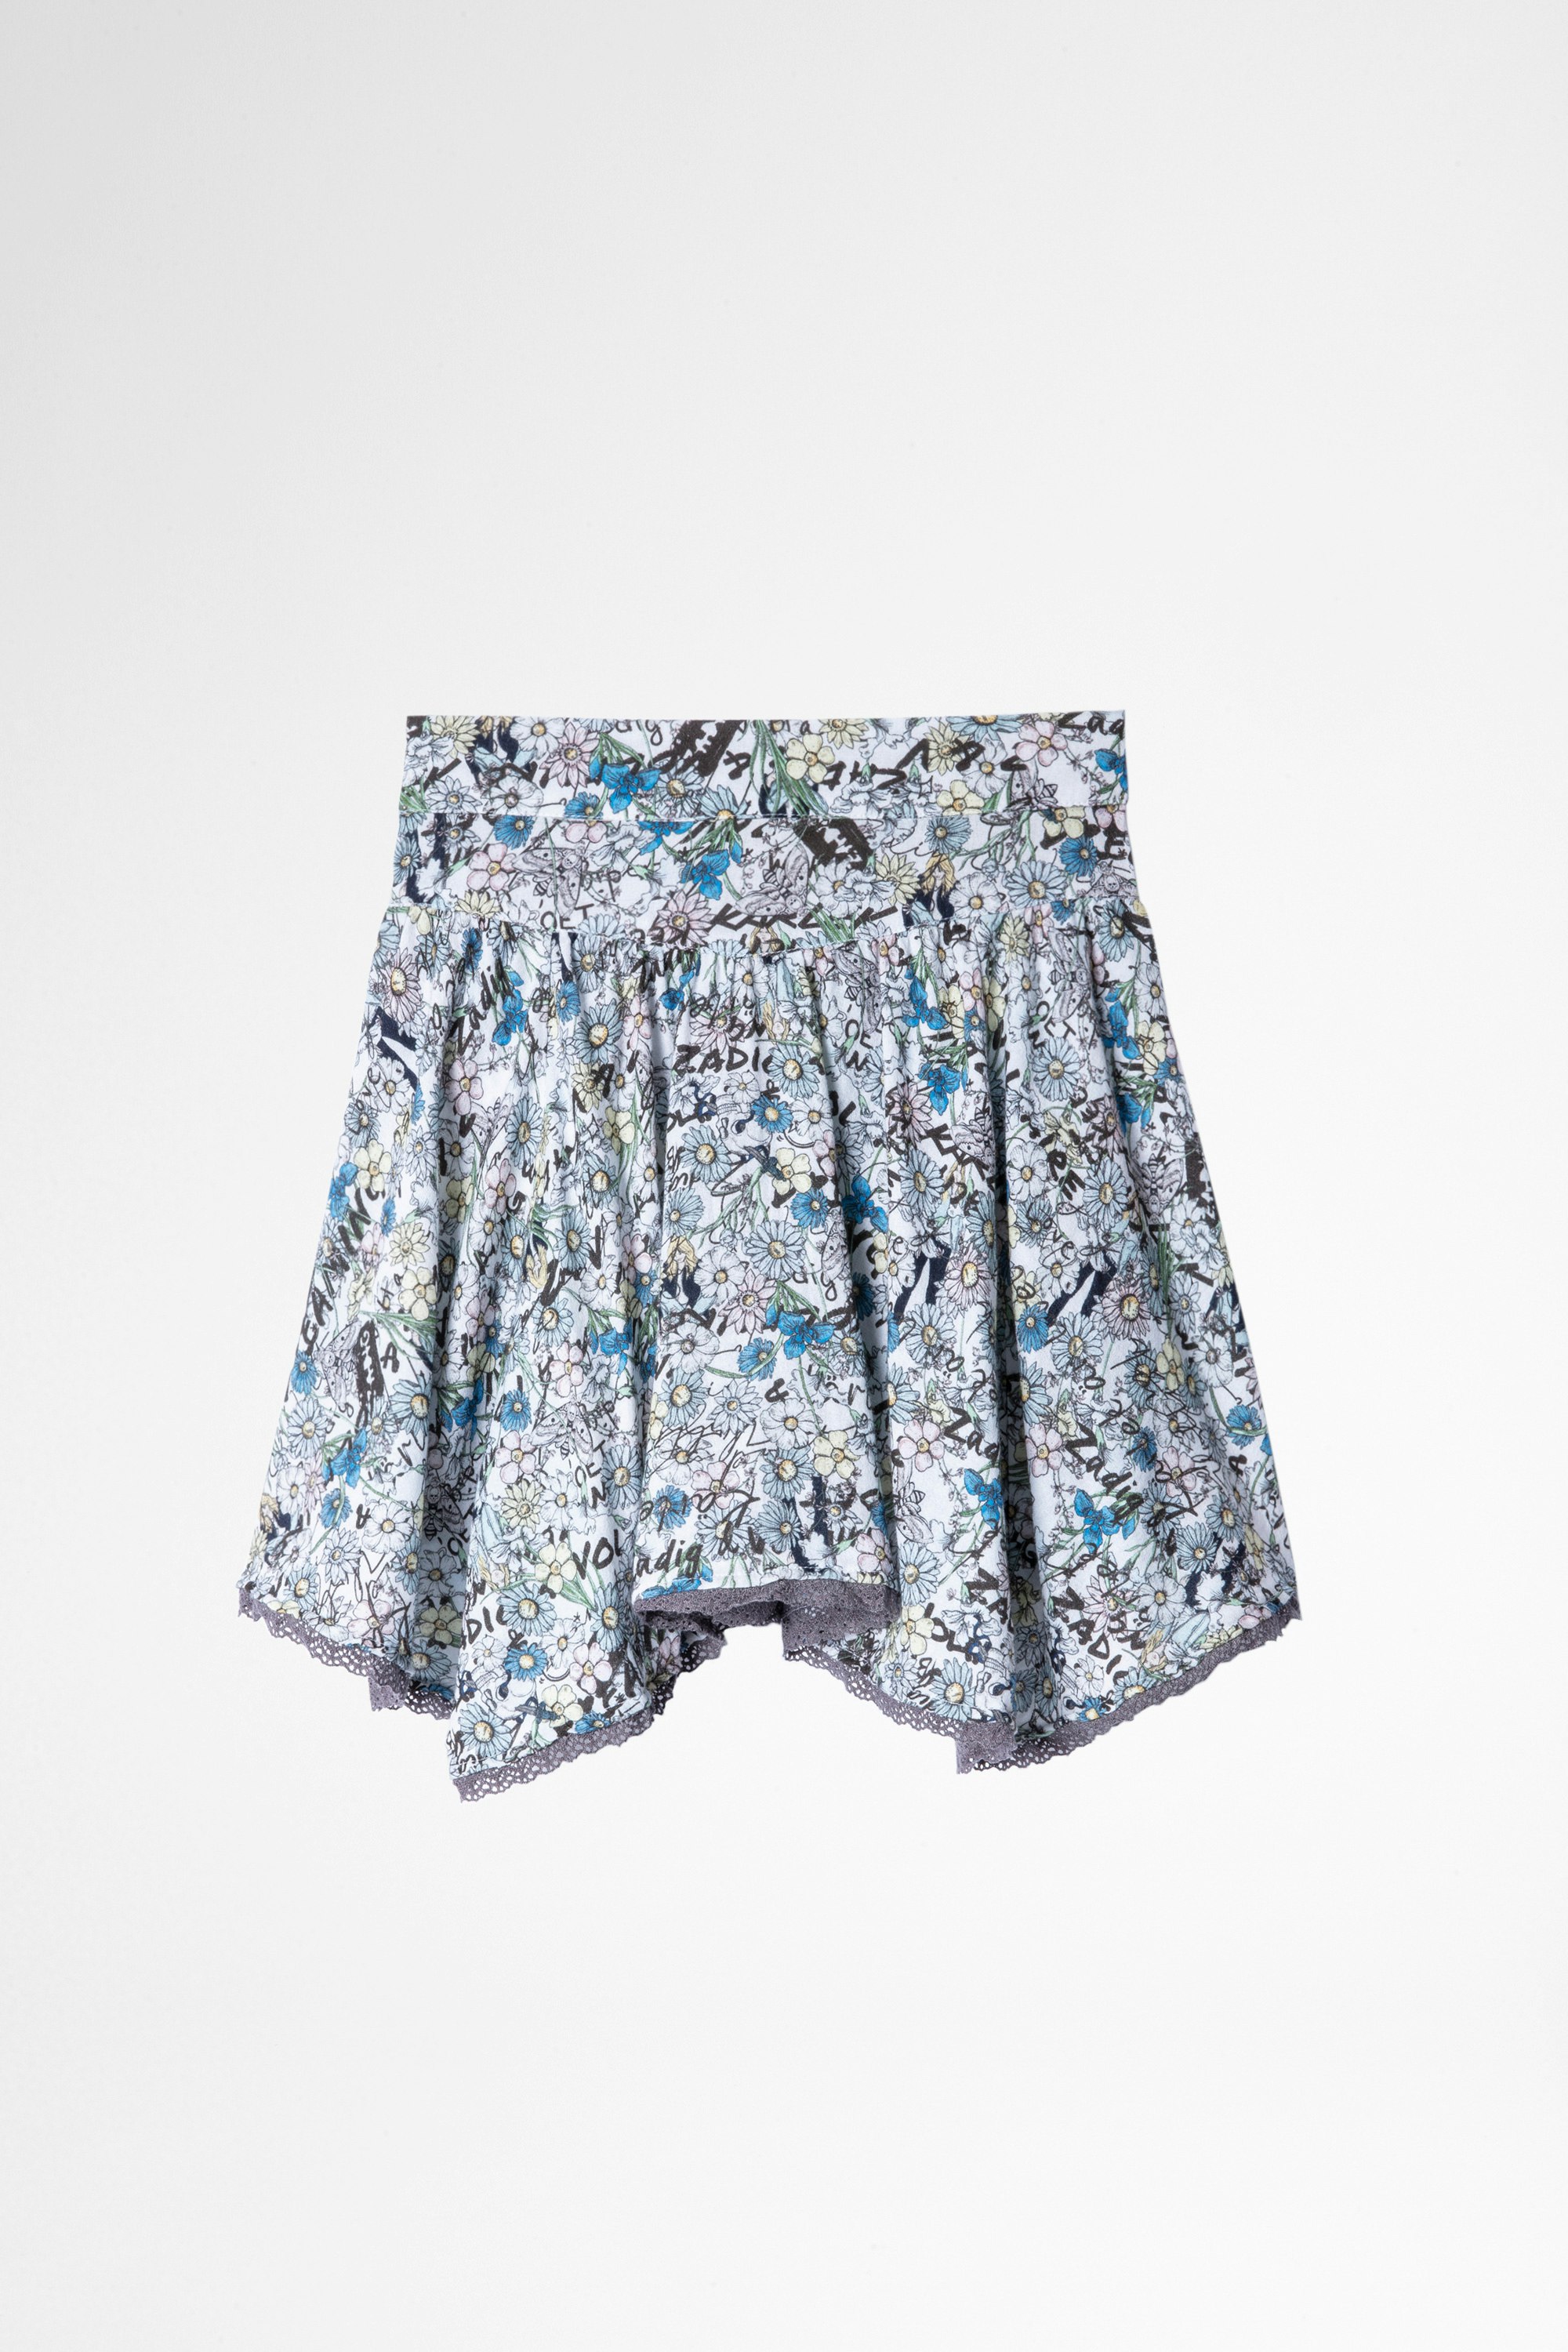 Alexa Children's スカート Children's short skirt in sky blue